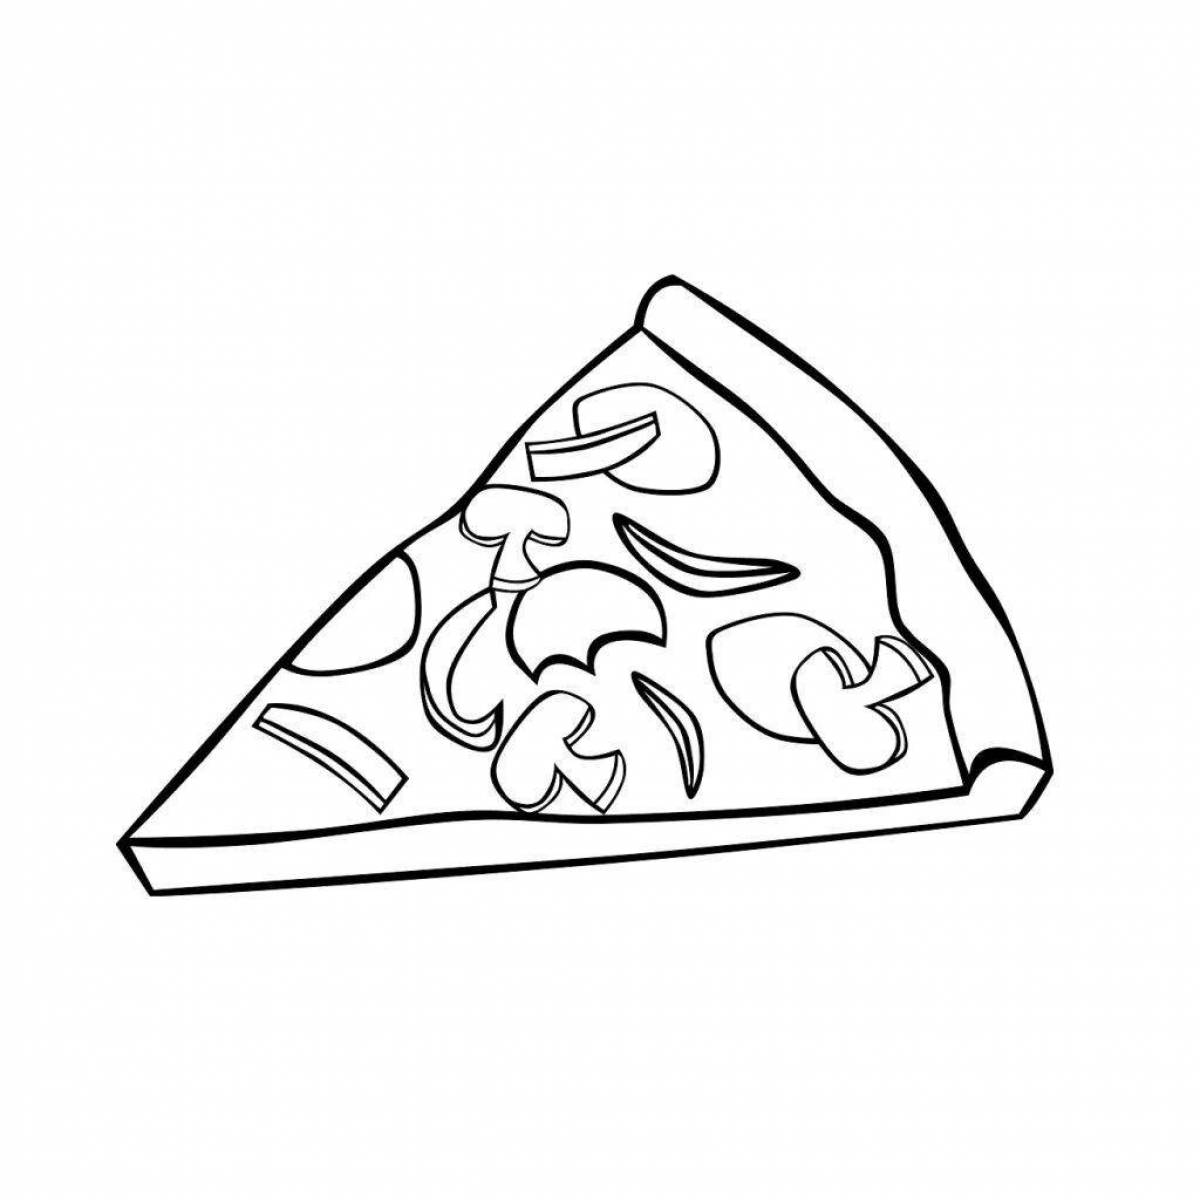 Sky coloring pizza slice